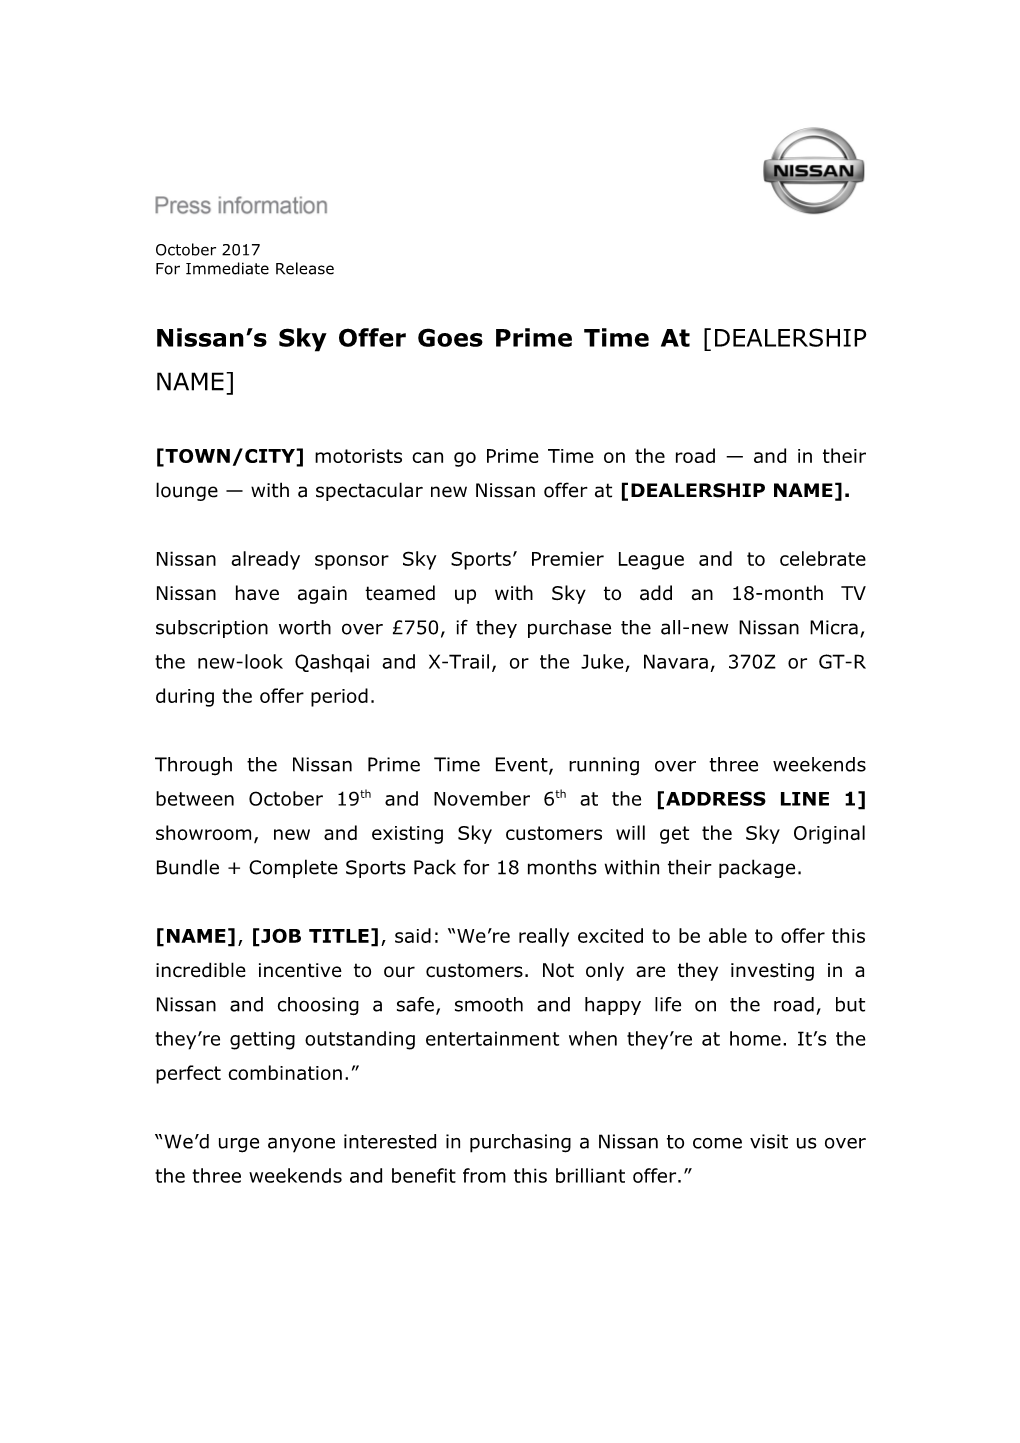 Nissan S Sky Offer Goes Prime Time at DEALERSHIP NAME